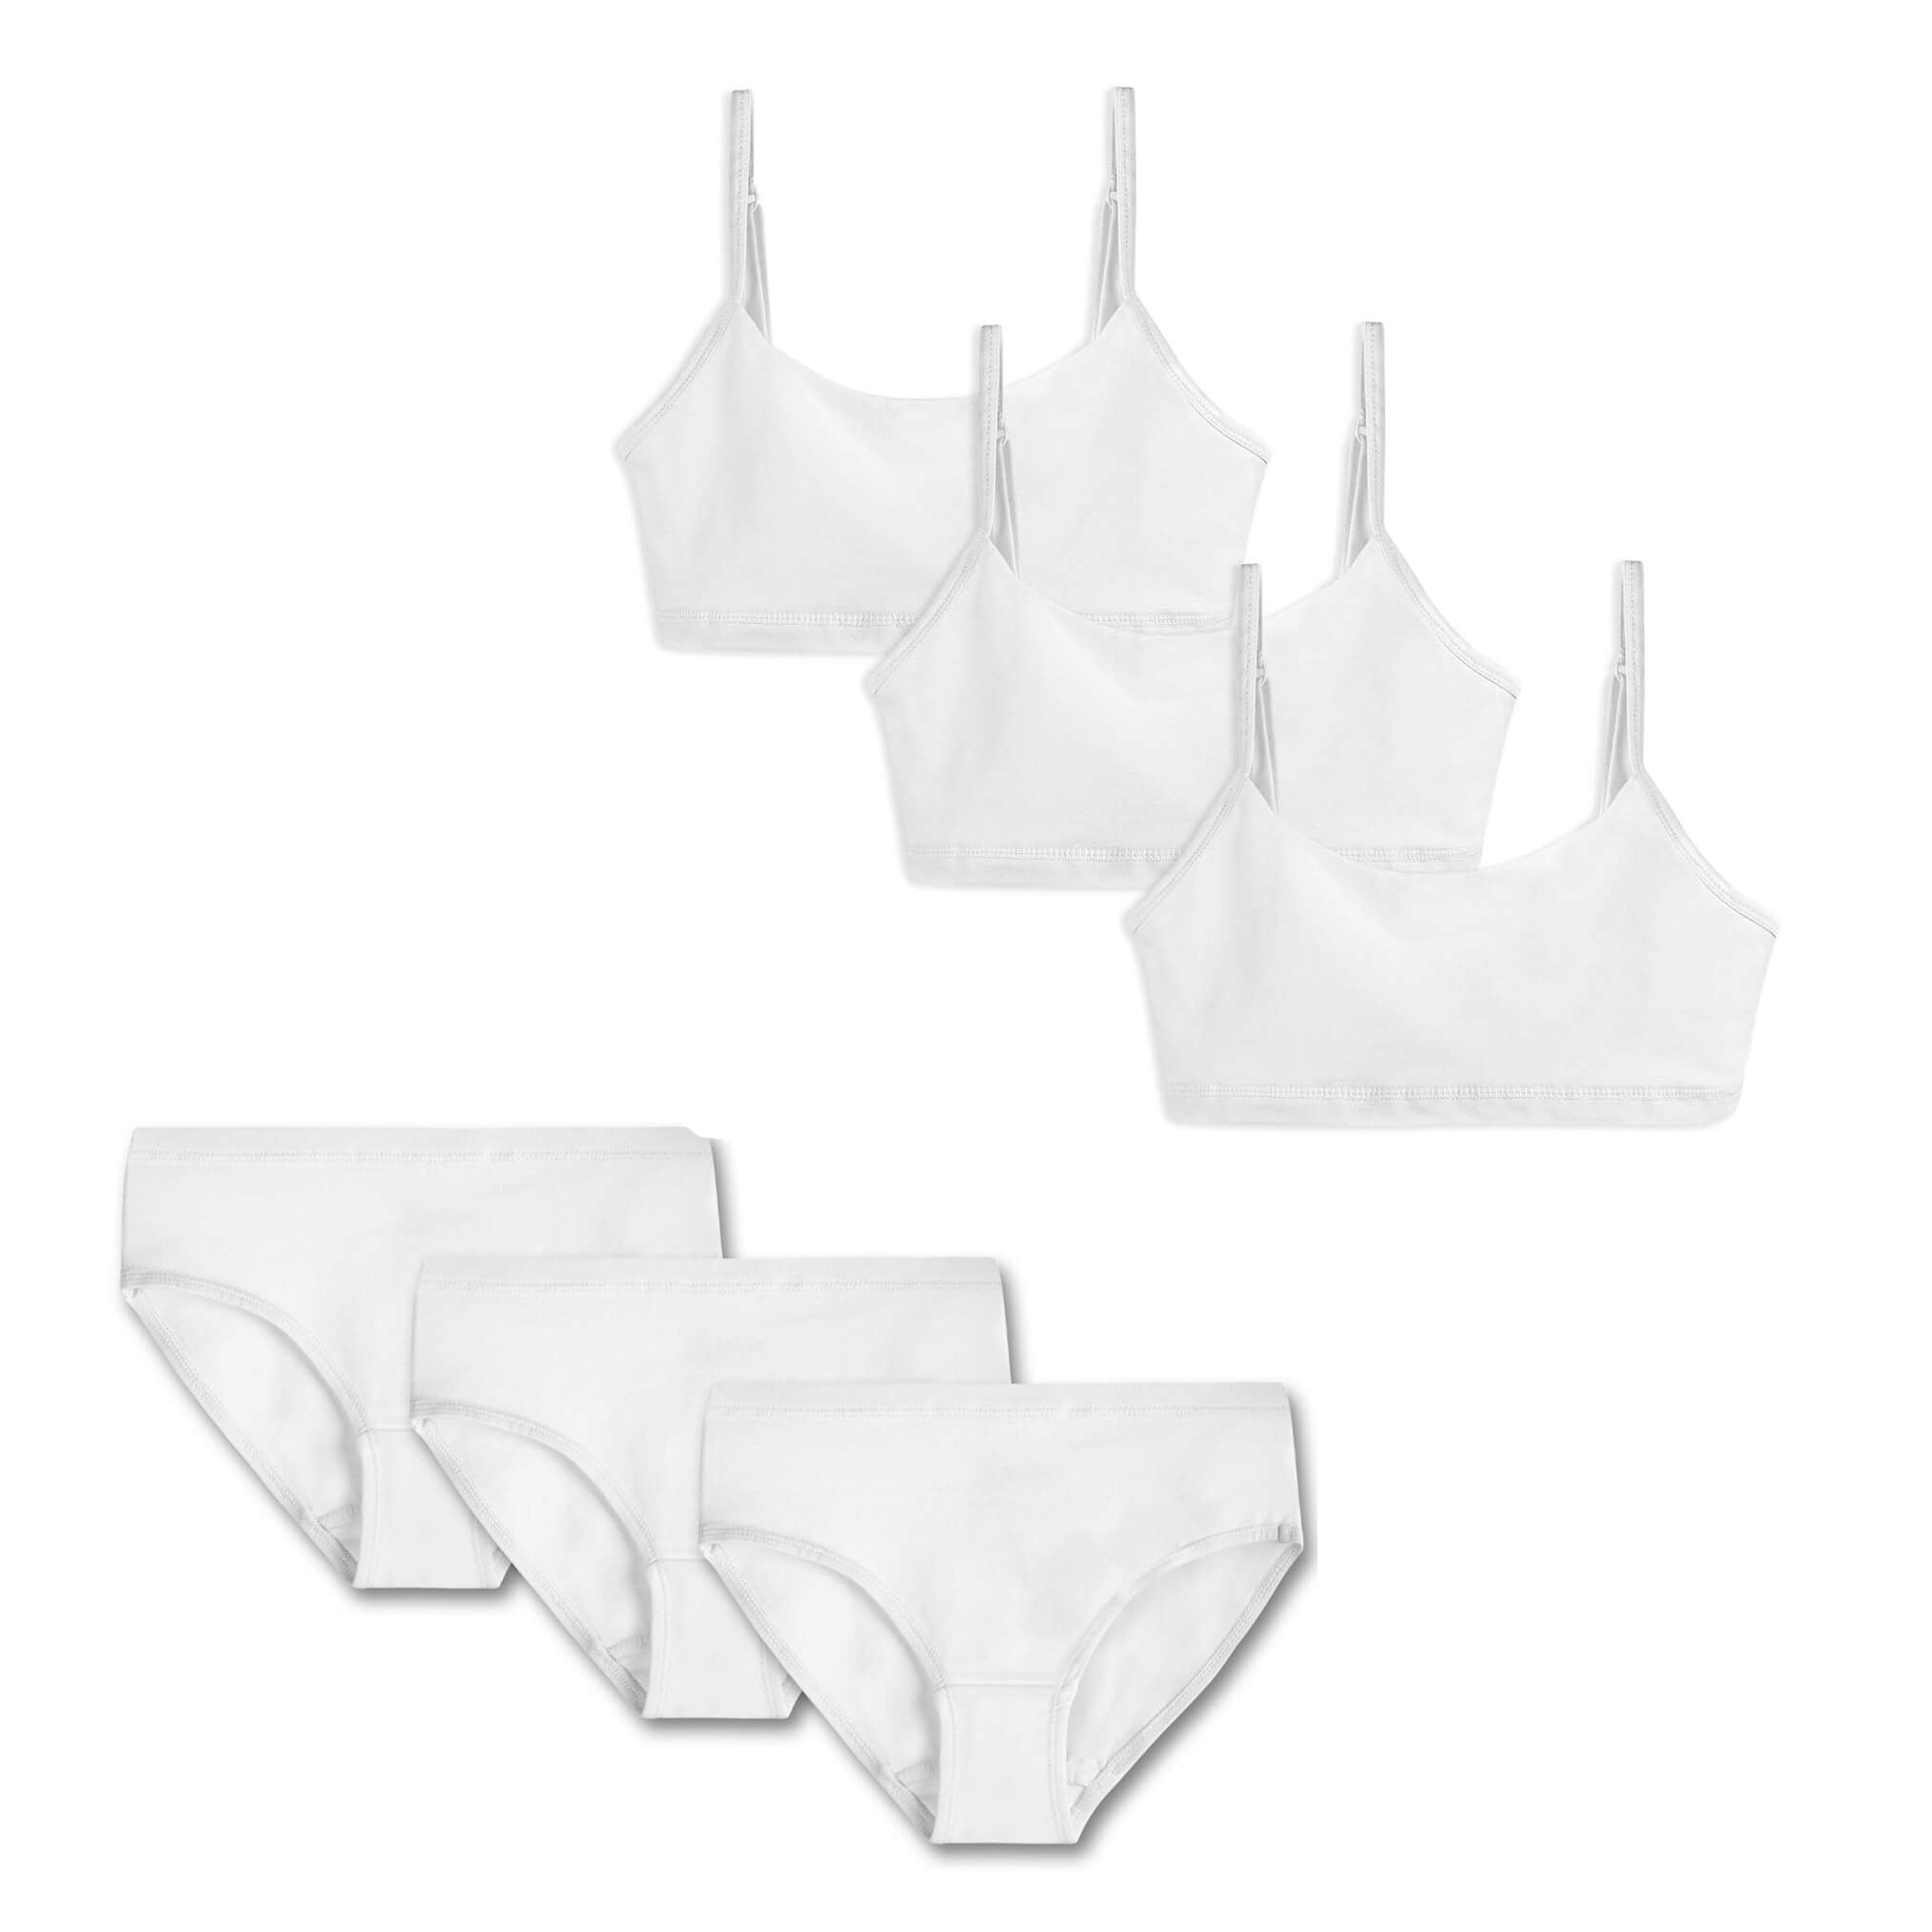 PHEZEN Cotton Bra Underpants for Girls, 3 Sets of Girls Bra Boxer Briefs,  Stretch Bra Underwear Set Everyday Girls Bras